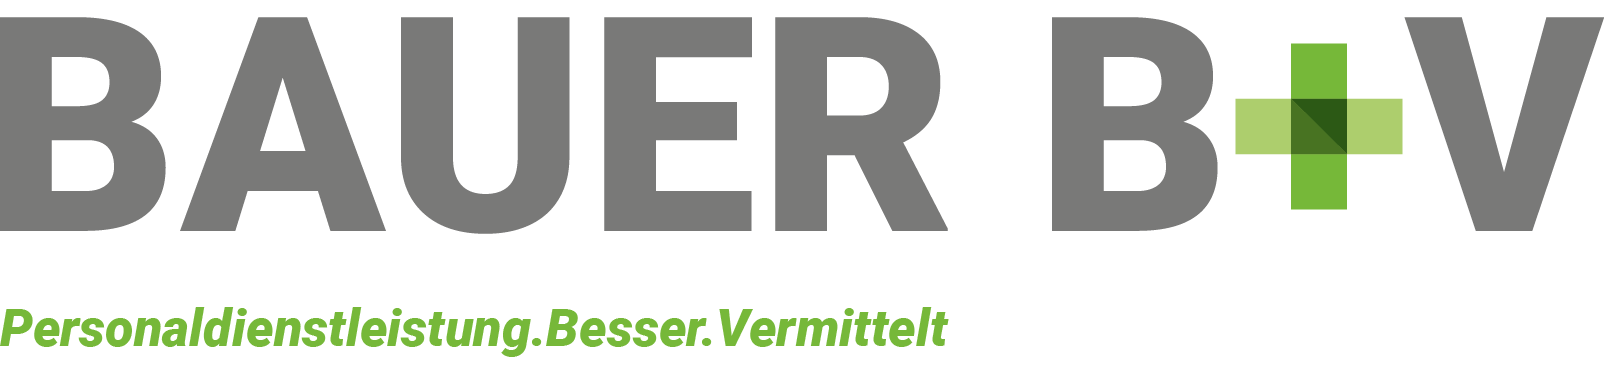 BAUER_BV_Personaldienstleistung_Logo_Corporate-Design